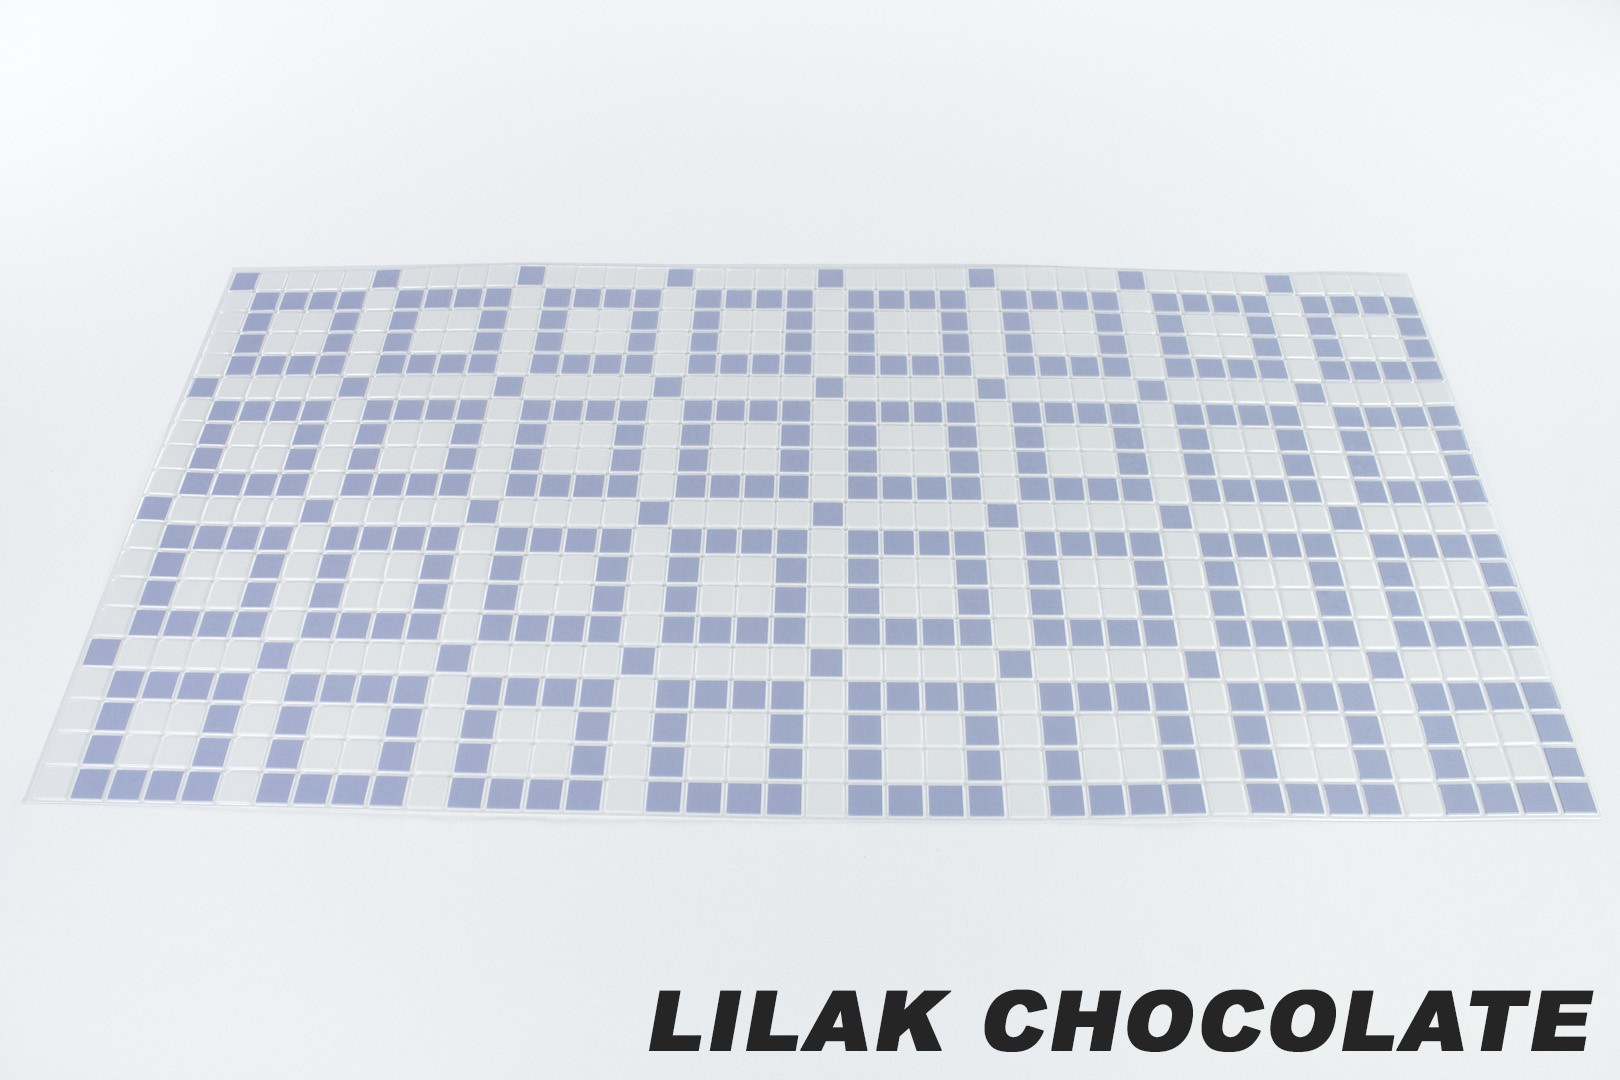 Lilak chocolate originalbild